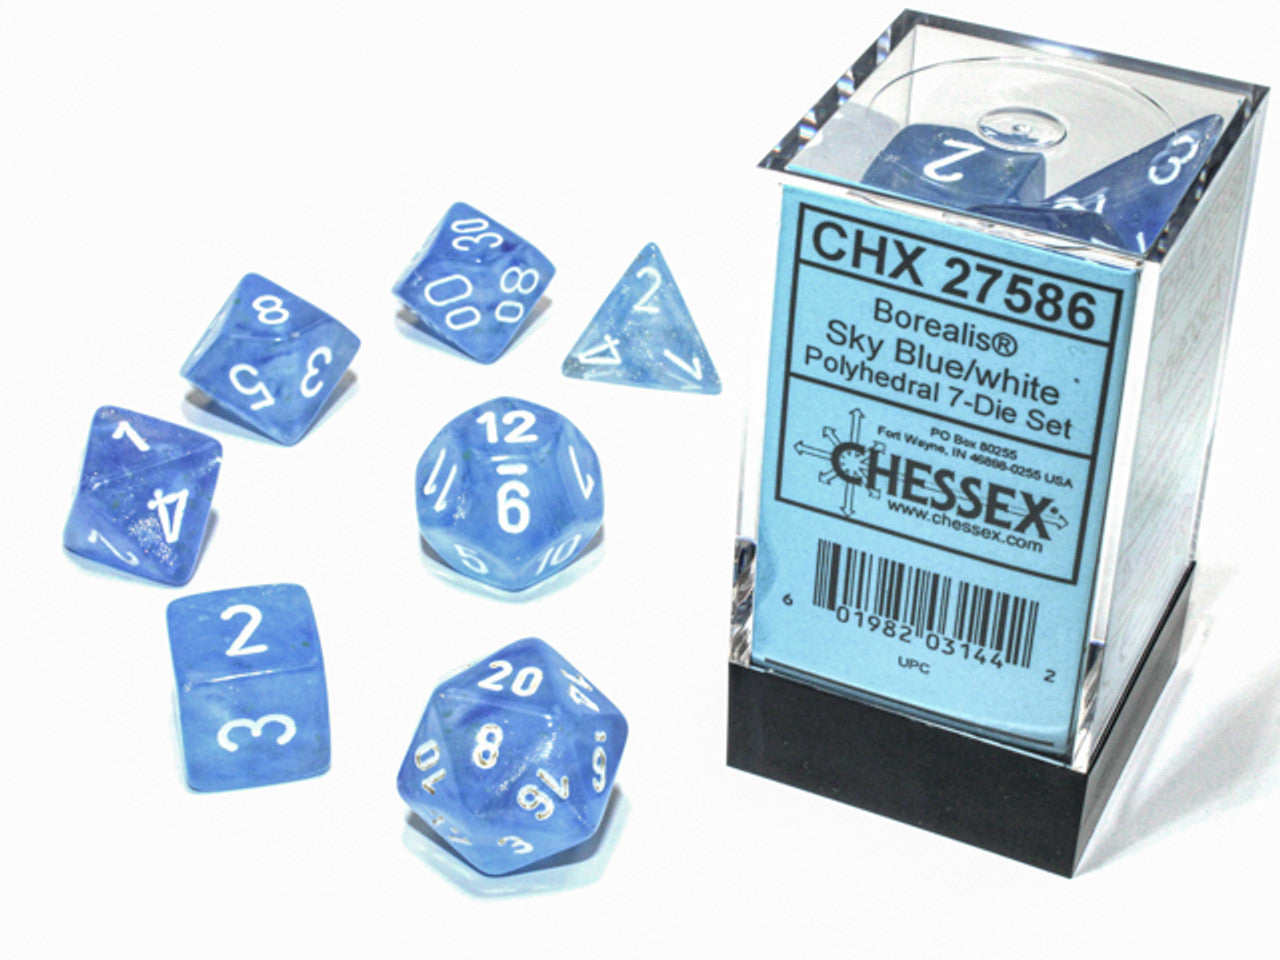 CHESSEX BOREALIS POLYHEDRAL 7-DIE SET - Add Sparkle to Your Gaming Experience!, Chessex, Dice & Counters, chessex-borealis-polyhedral-7-die-set, Chessex, CHX, Dice, Die, Die Set, Dark Ninja Gaming LA